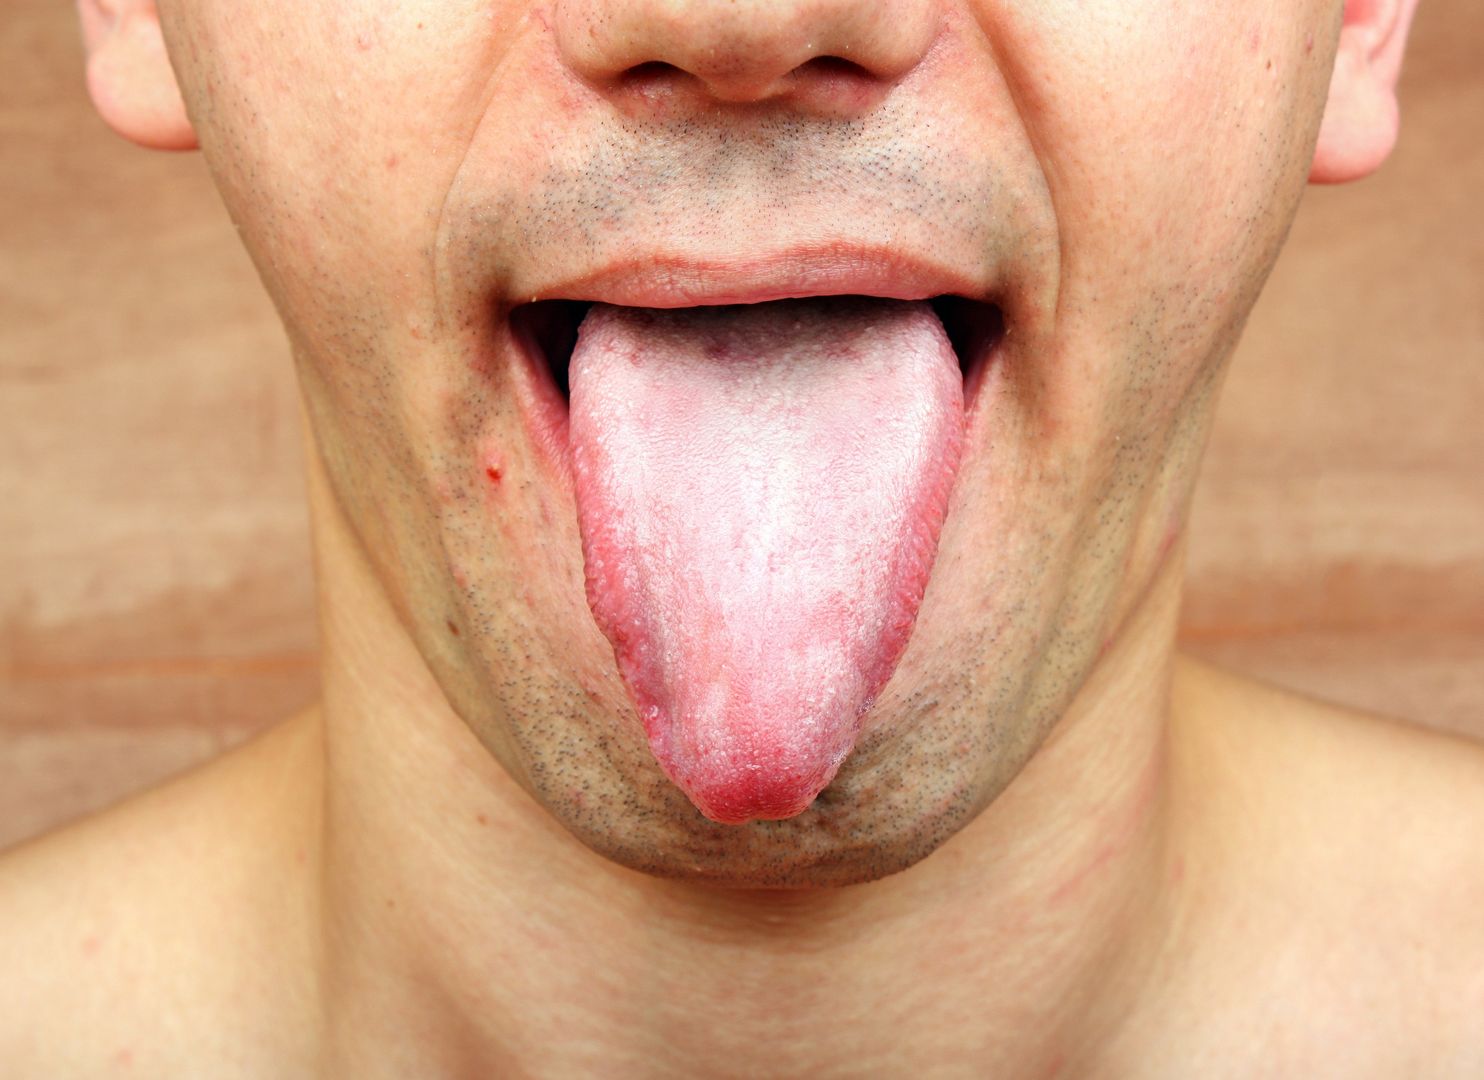 Obejrzyj swój język i sprawdź, czy jesteś zdrowy.